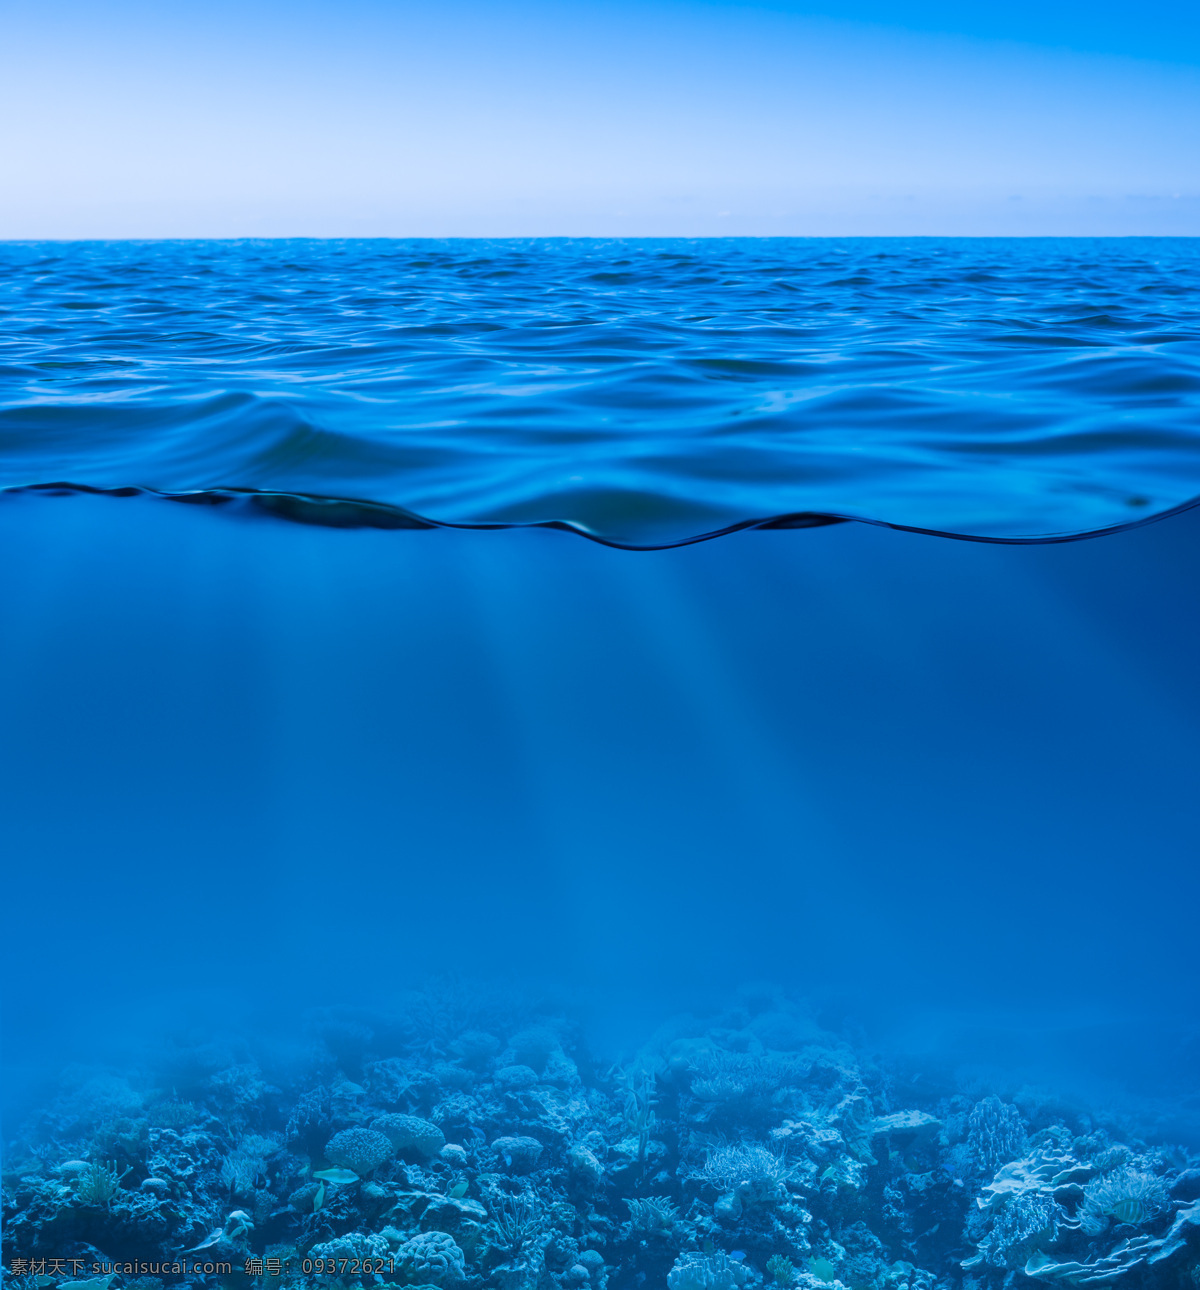 深海 海底 大海 蓝色 海面 蓝 自然景观 自然风景